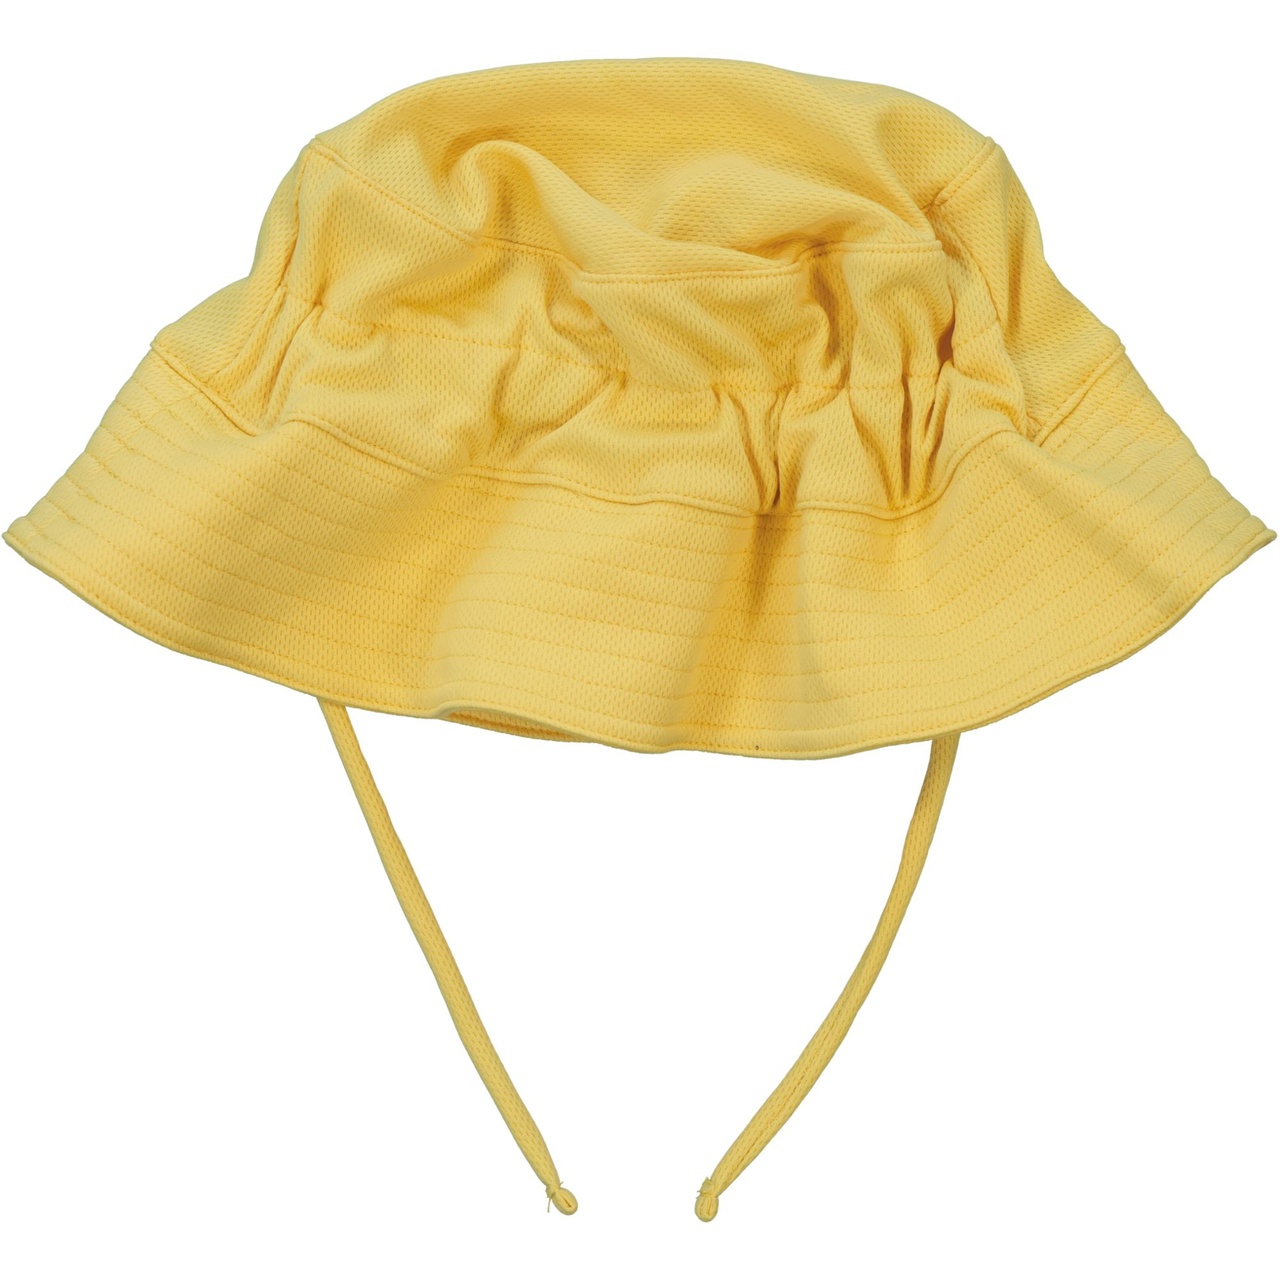 UV Sunny hat Yellow  4-10M